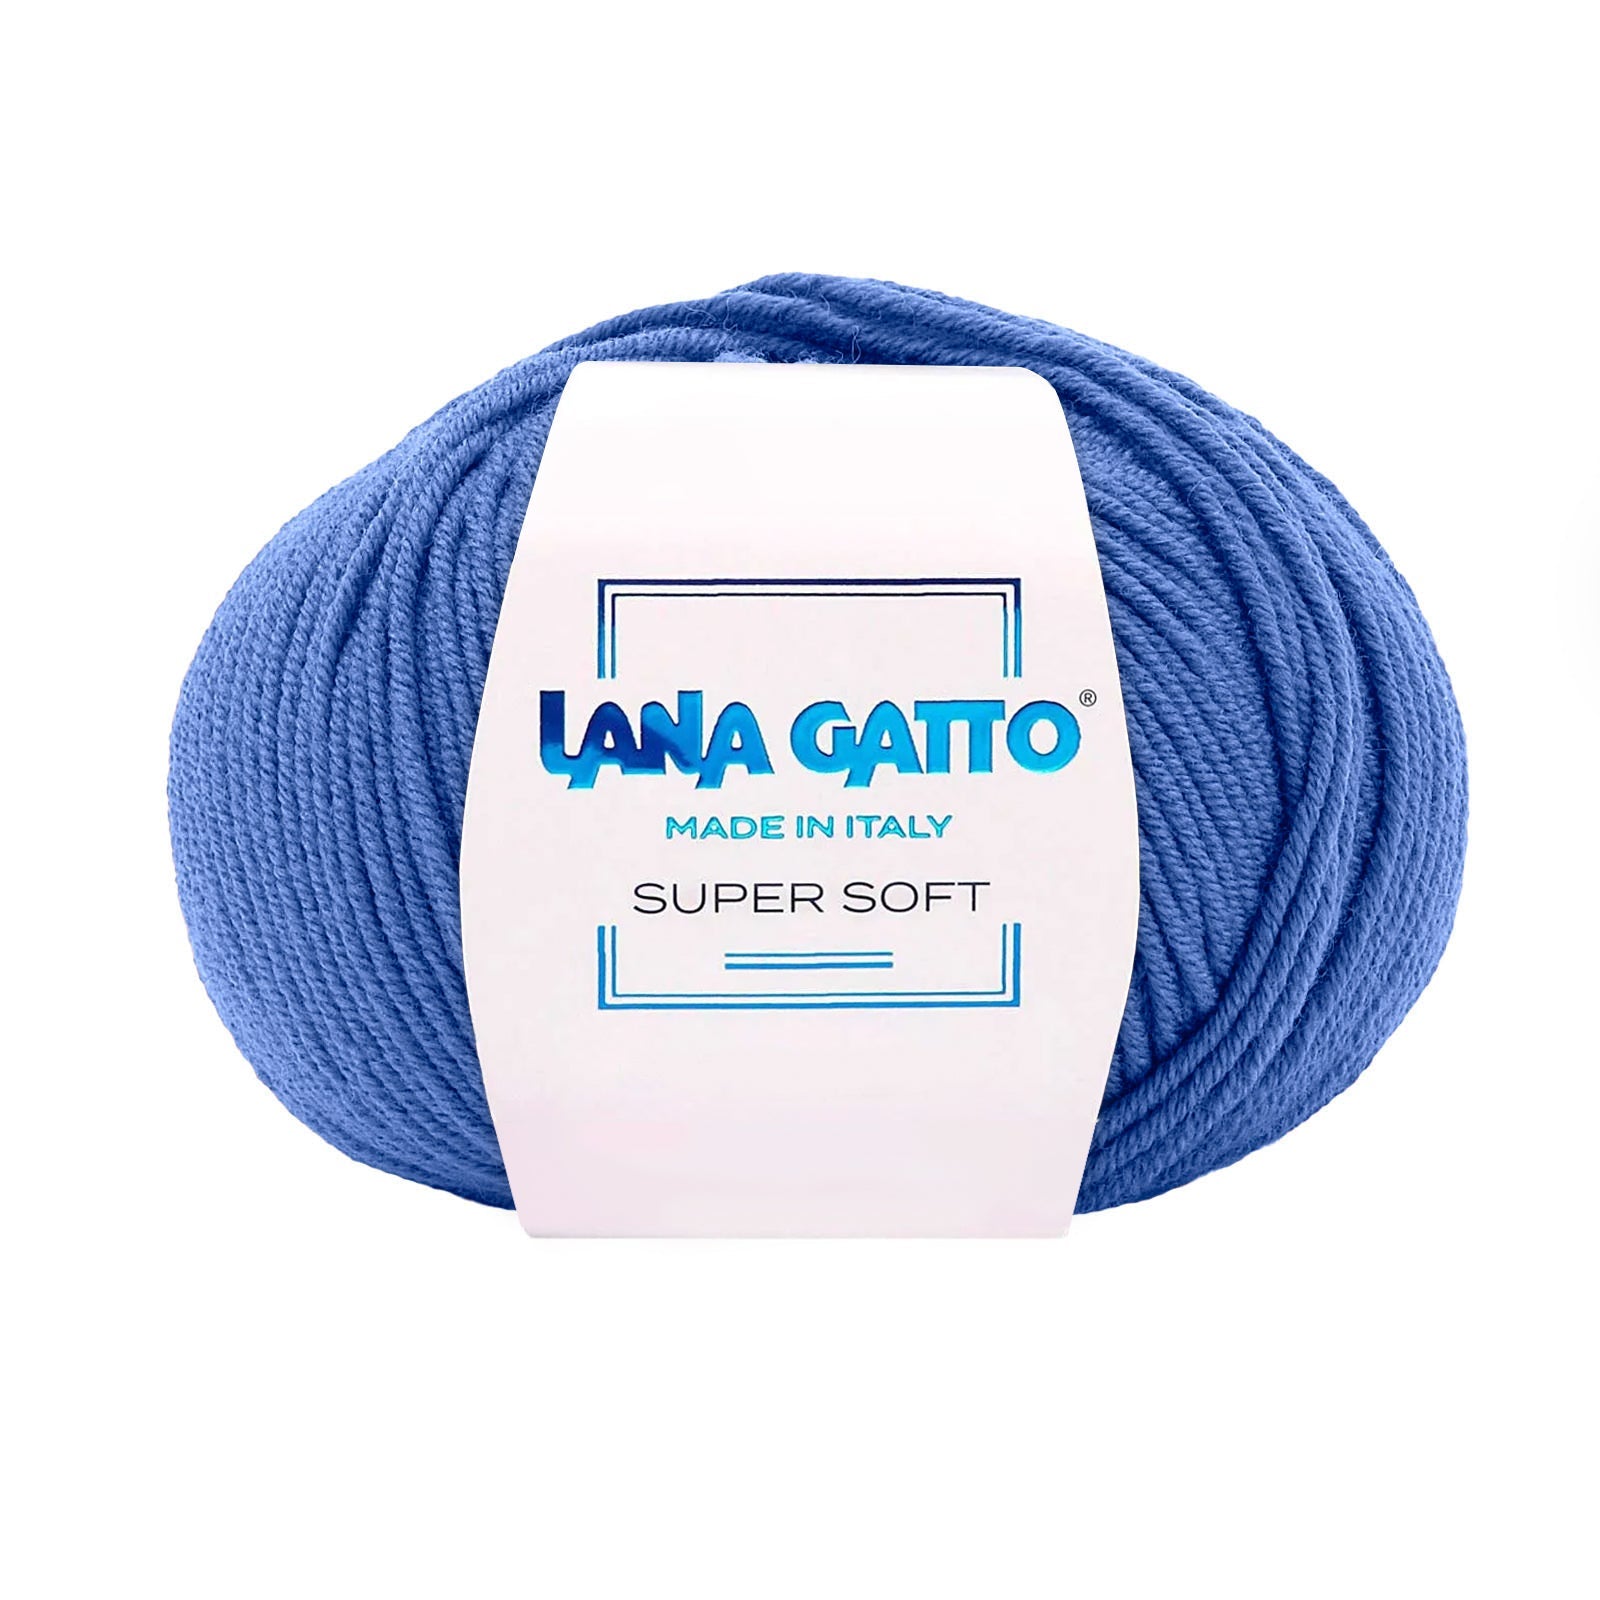 Gomitolo 100% Pura Lana Vergine Merino Extrafine Lana Gatto Linea Super Soft - Tonalità Blu - Blu - 13993 - Gomitolo